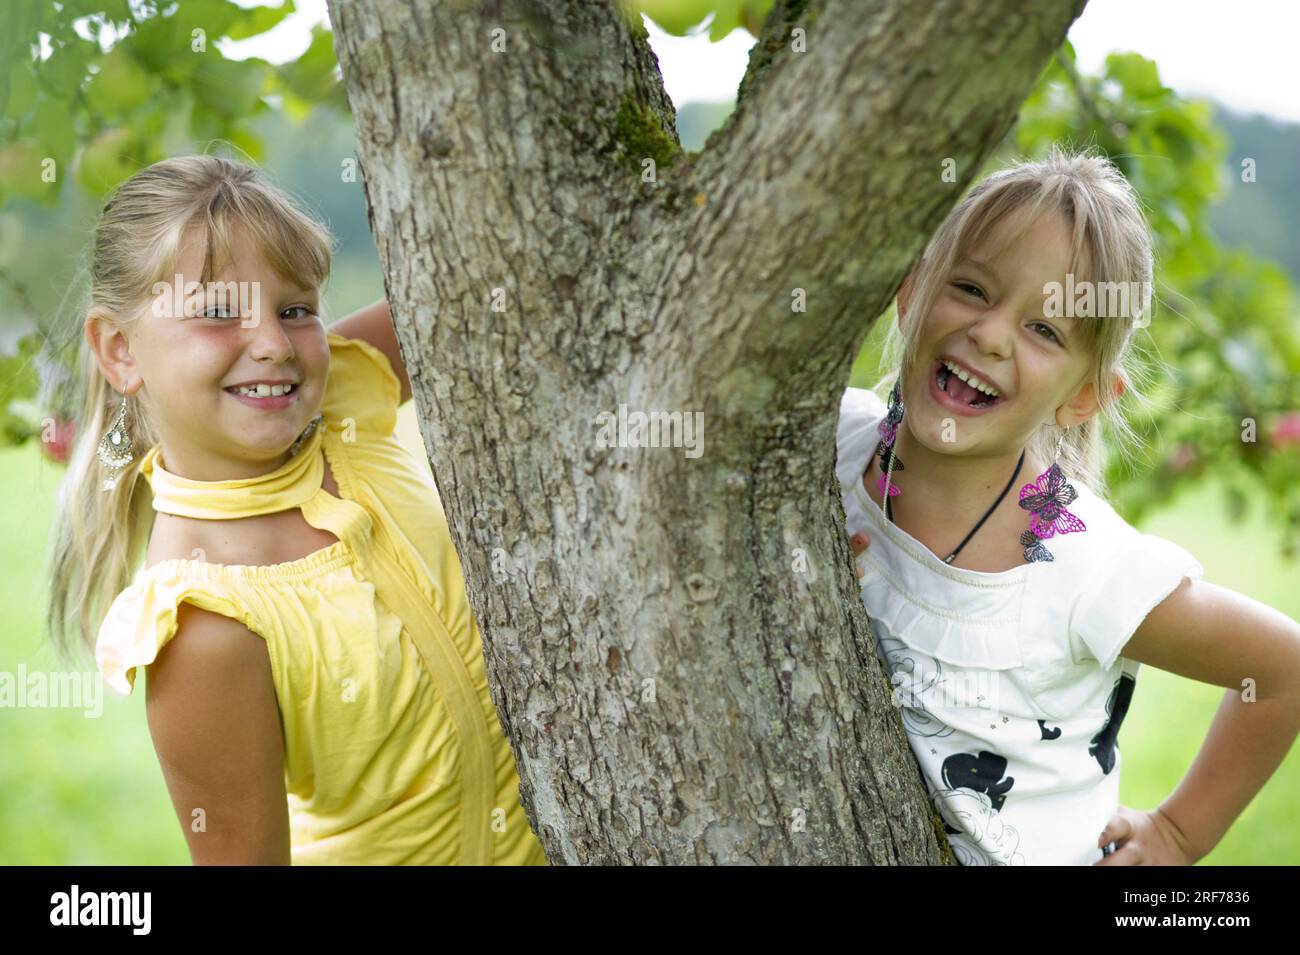 Zwei bionda fröhliche Mädchen unter einem Apfelbaum, 7 Jahre alt, lachen vergnügt in Die Kamera, Park, Garten, Obstgarten, Foto Stock